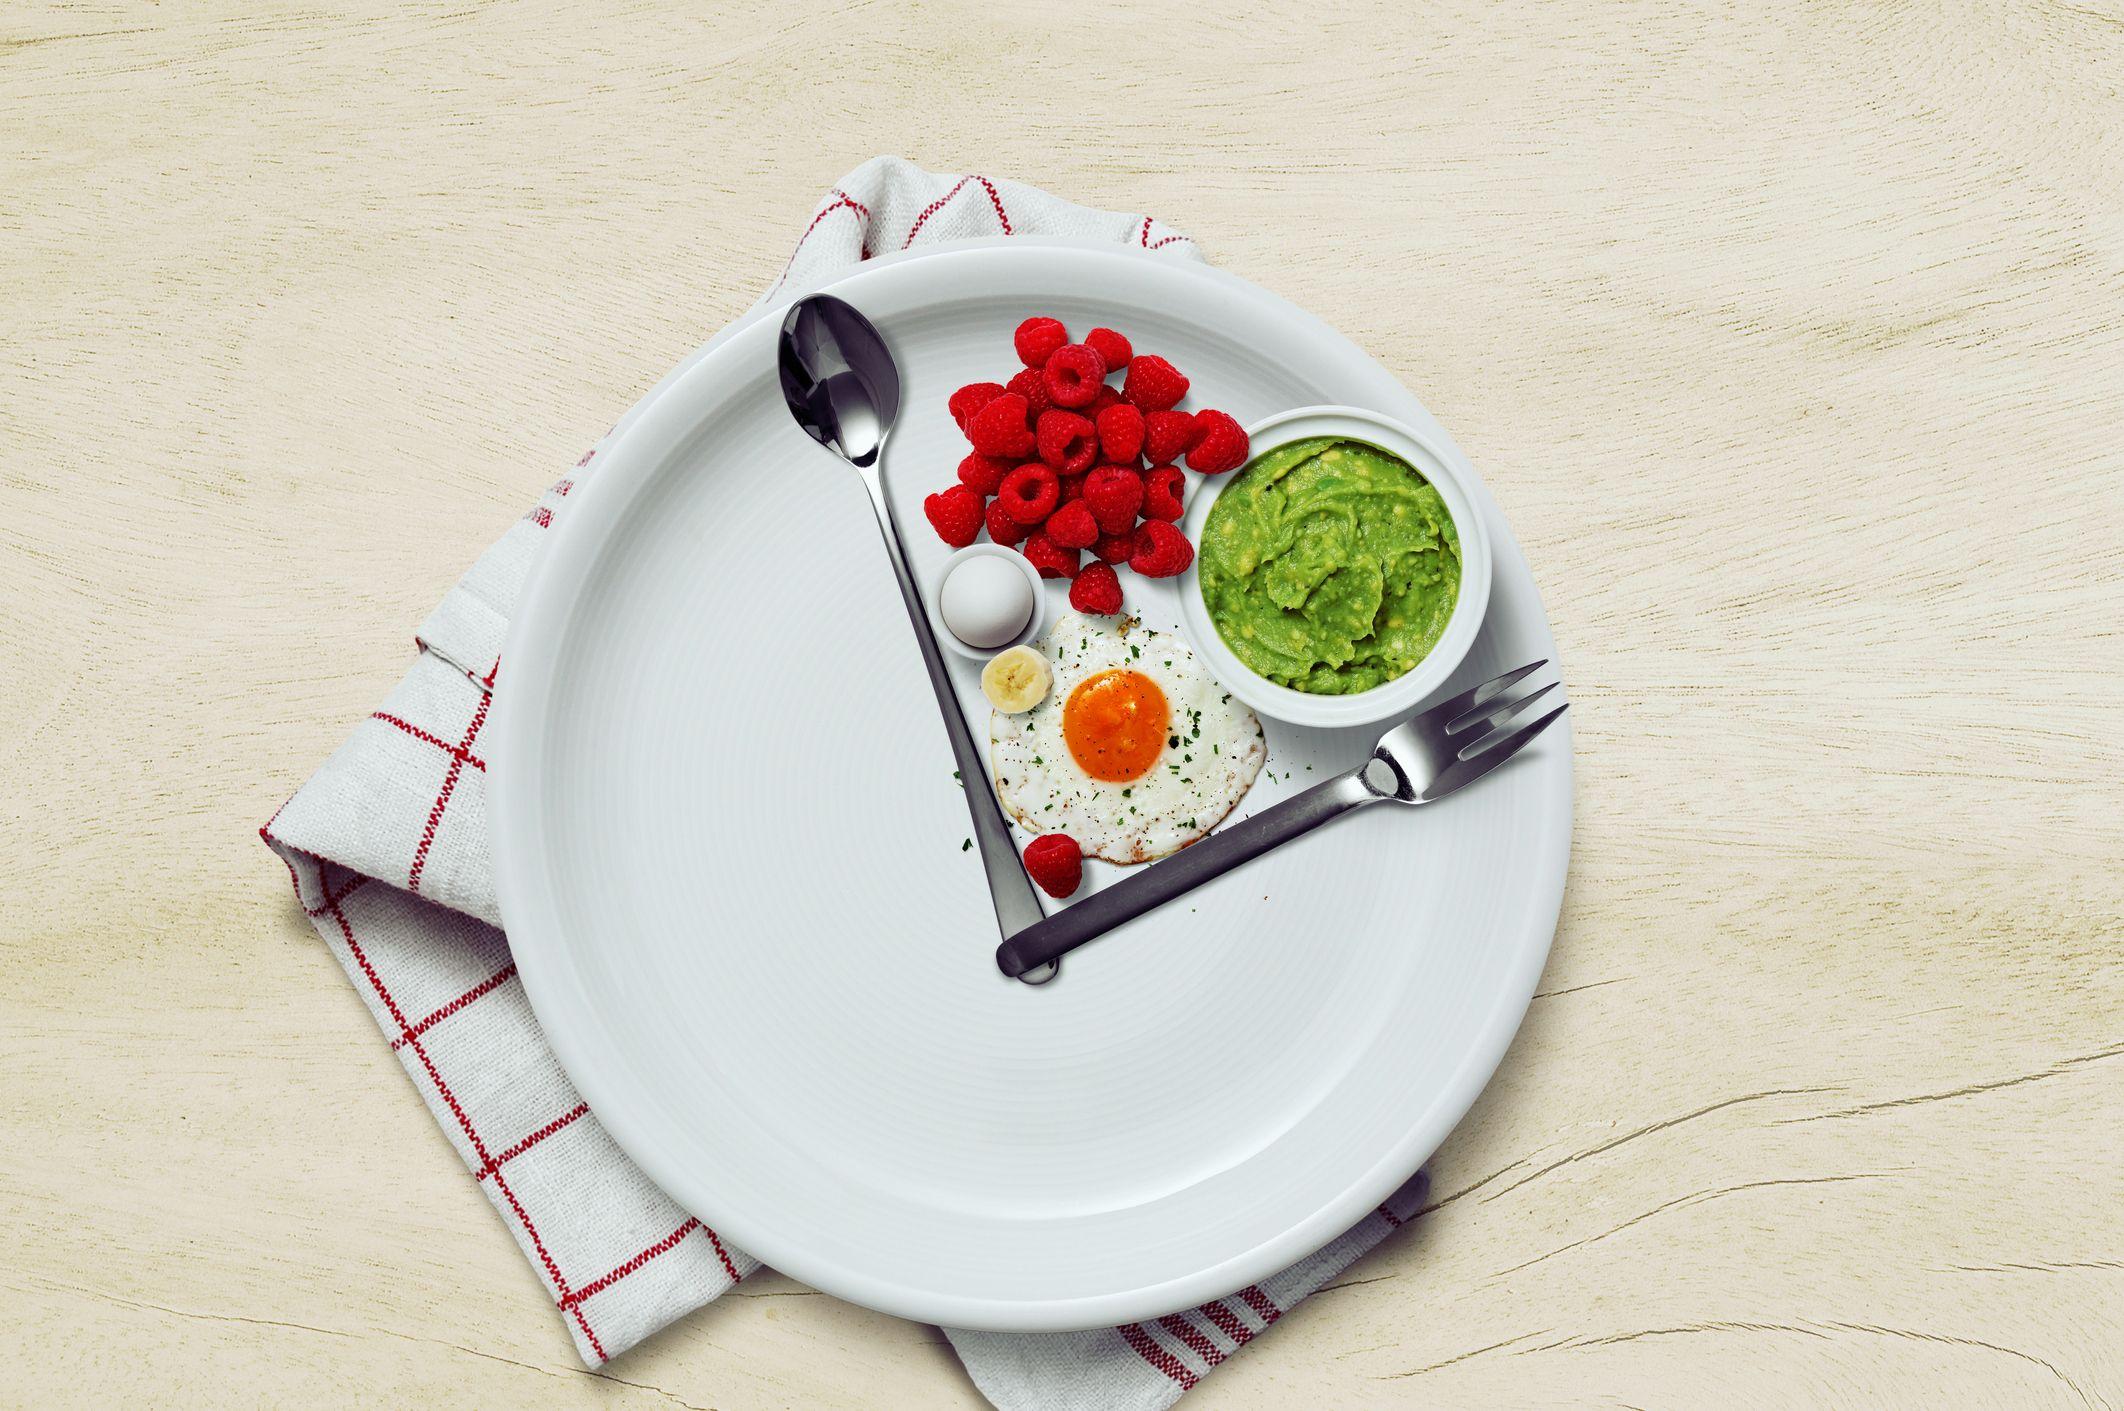 Plato de comida con un tenedor y una cuchara como agujas de un reloj y comida saludable en medio.